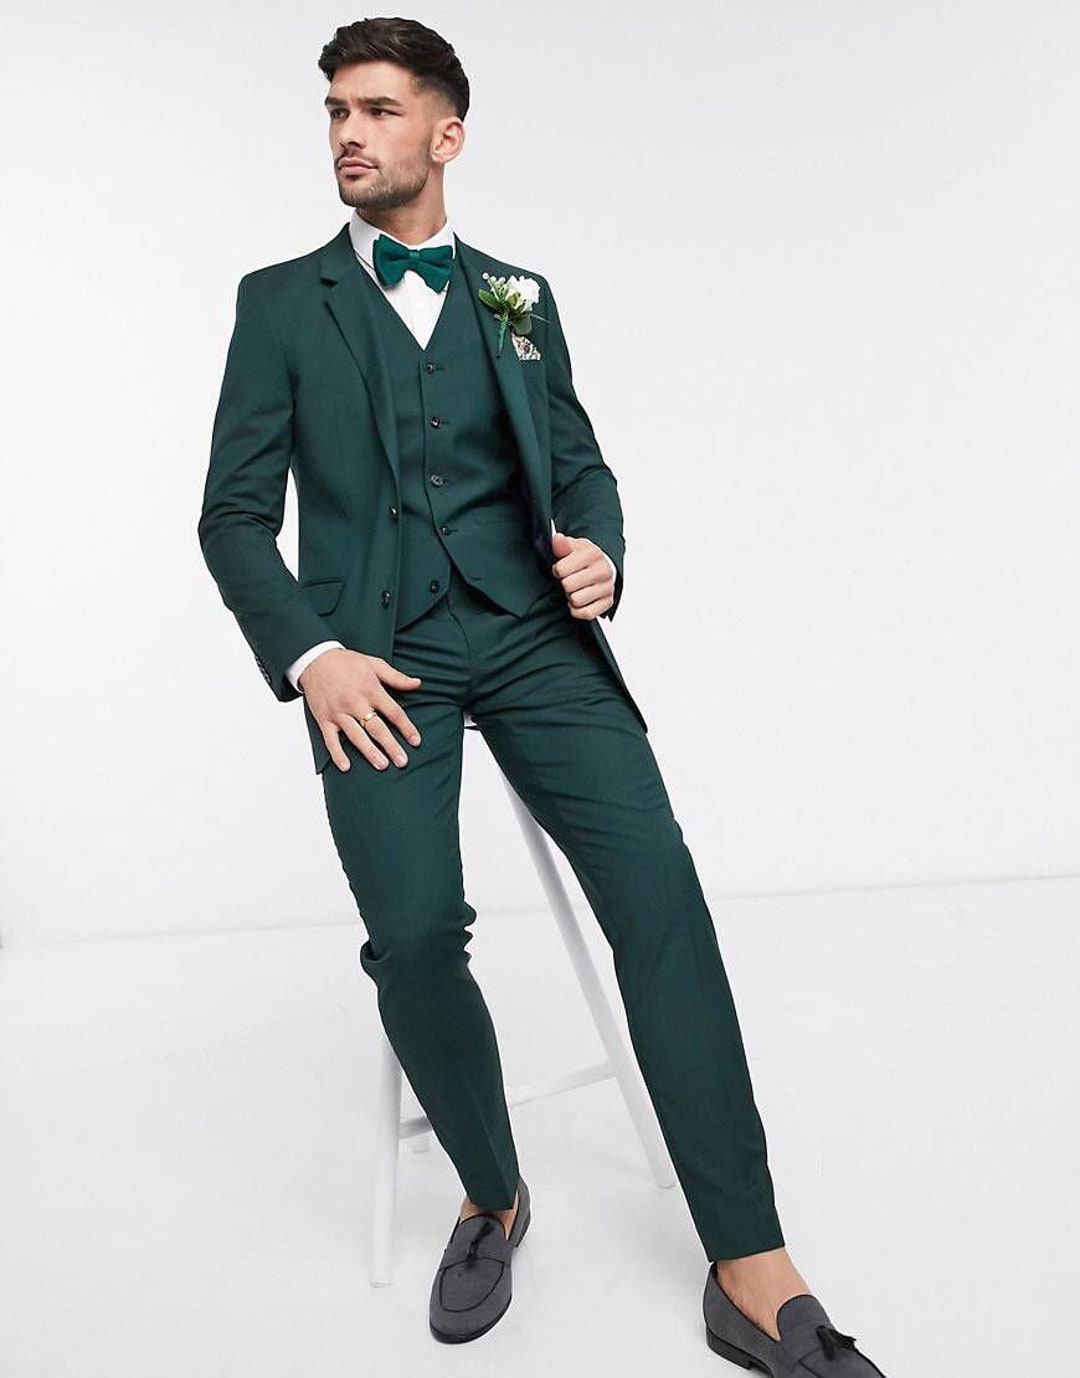 Men Suit 3 Piece Green Suits for Men Slim Fit Suits One - Etsy